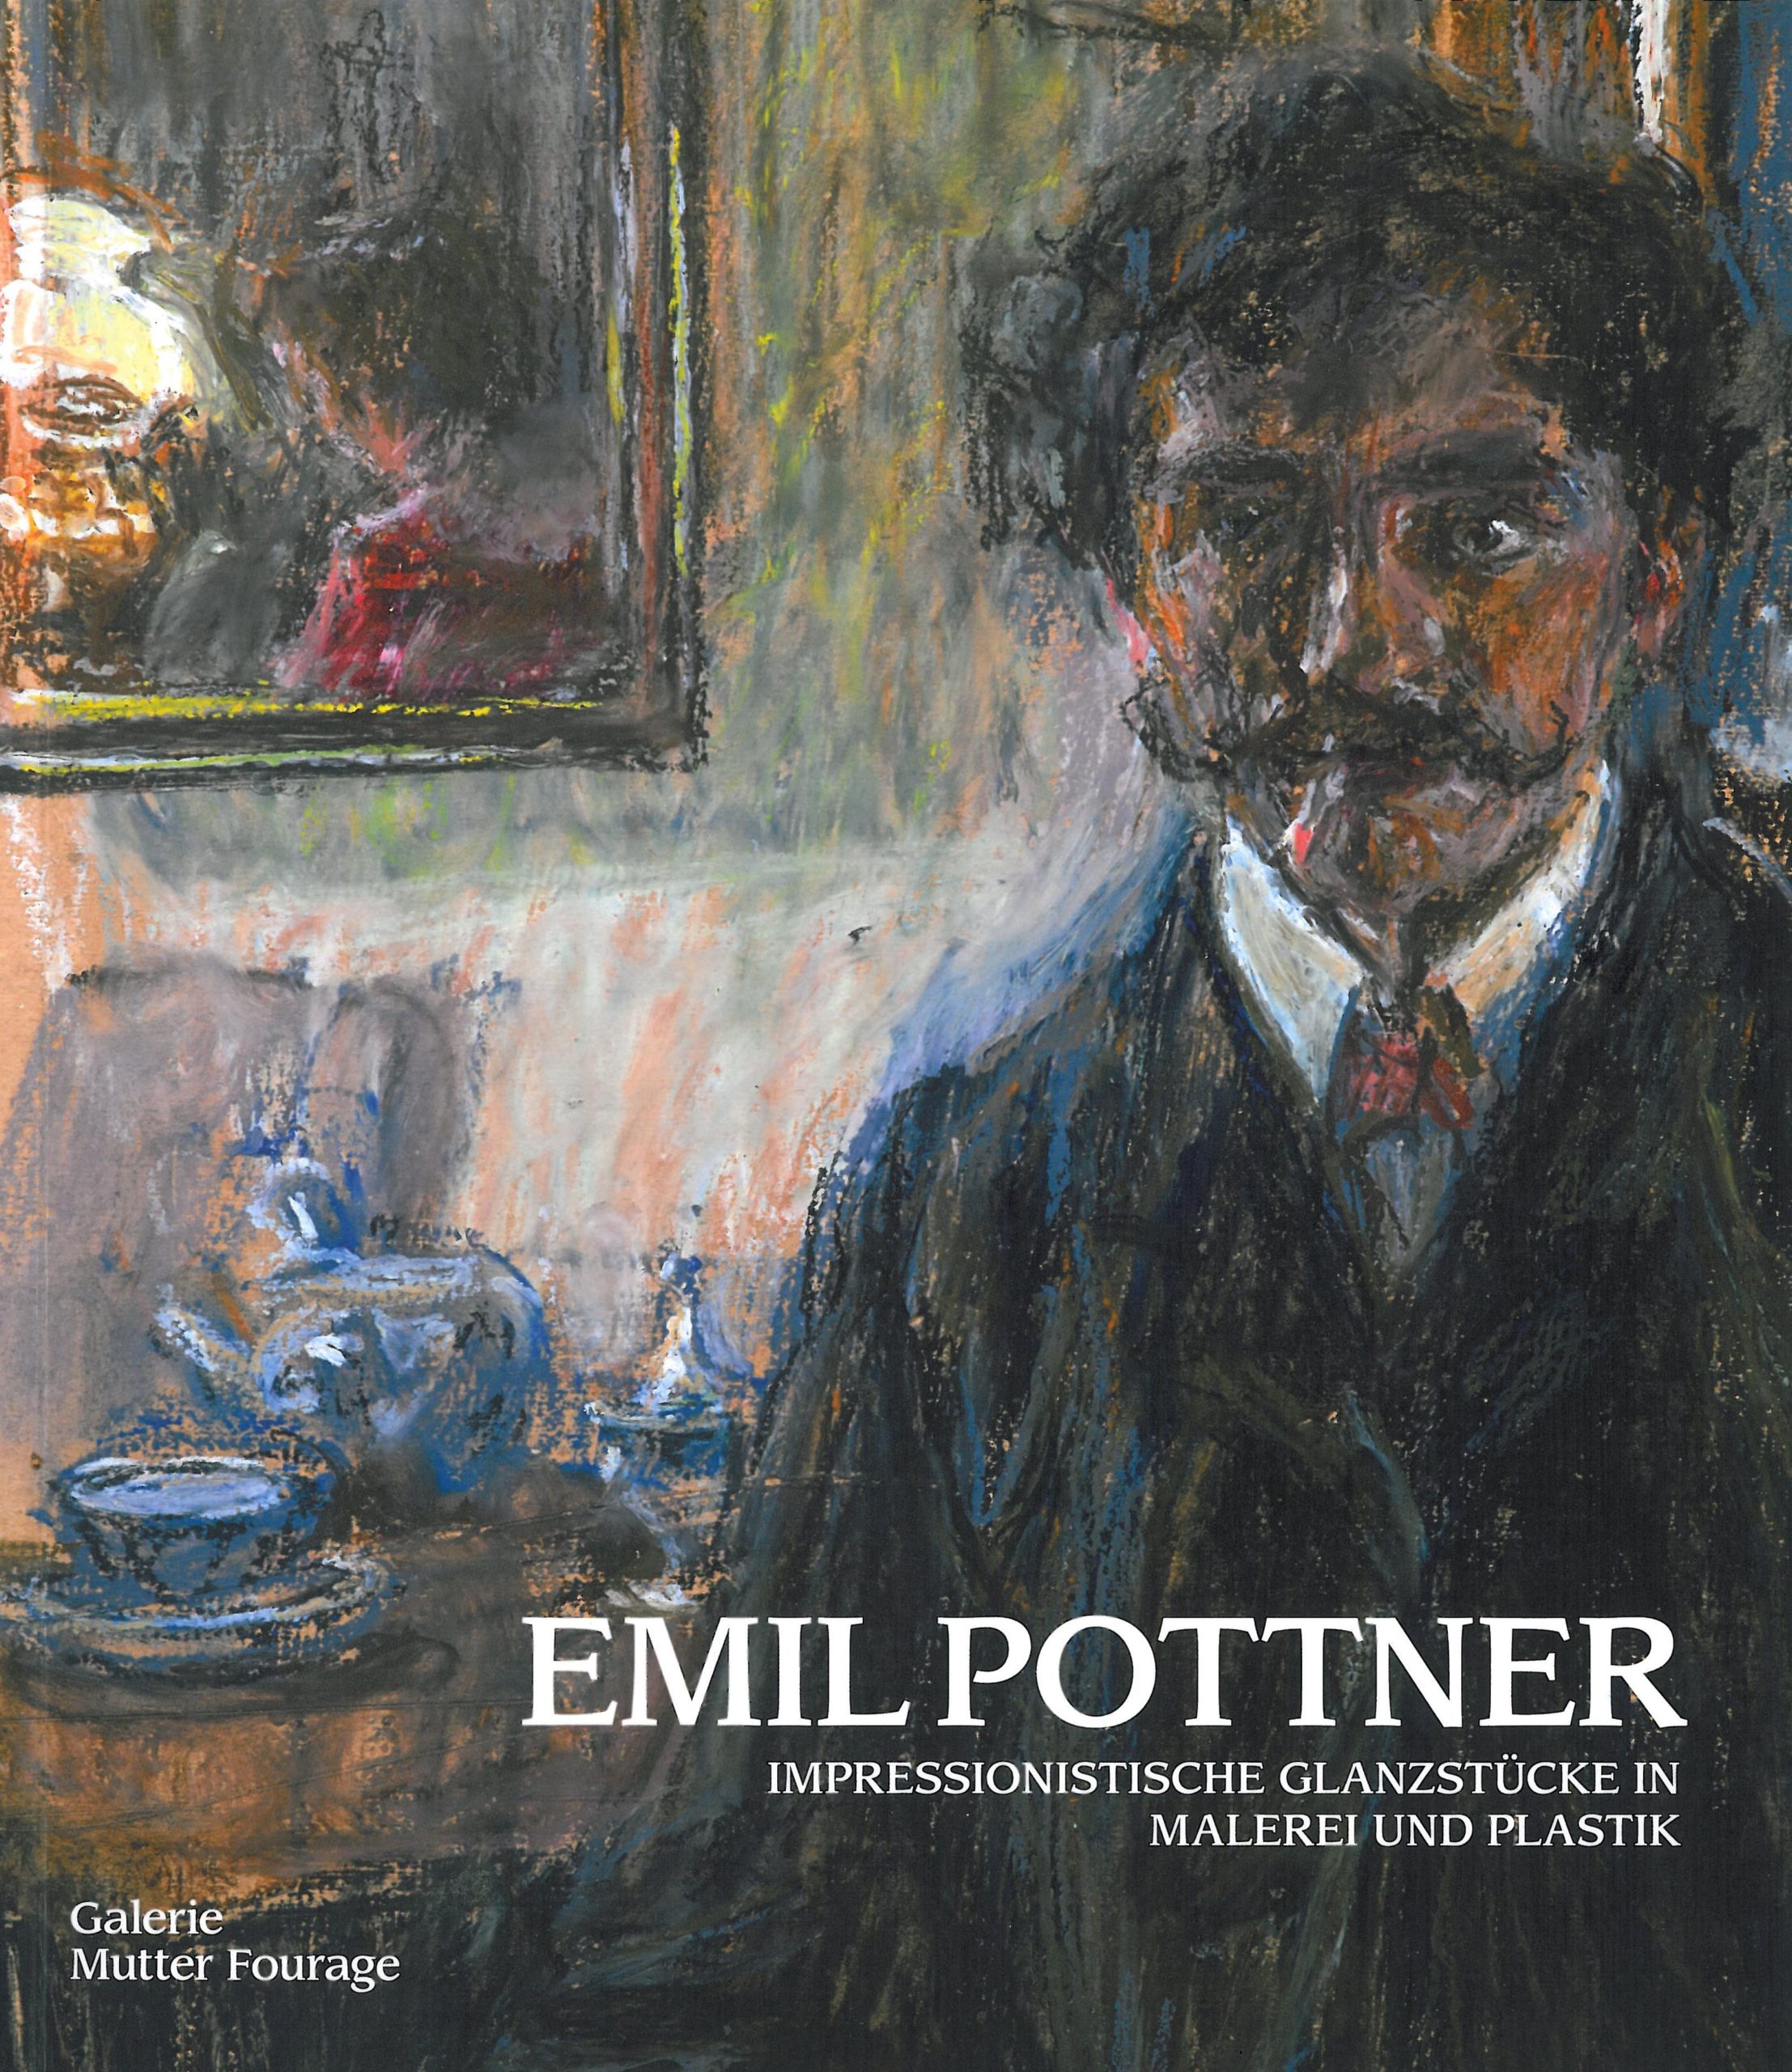 Emil Pottner, Impressionistische Glanzstücke in Malerei und Plastik